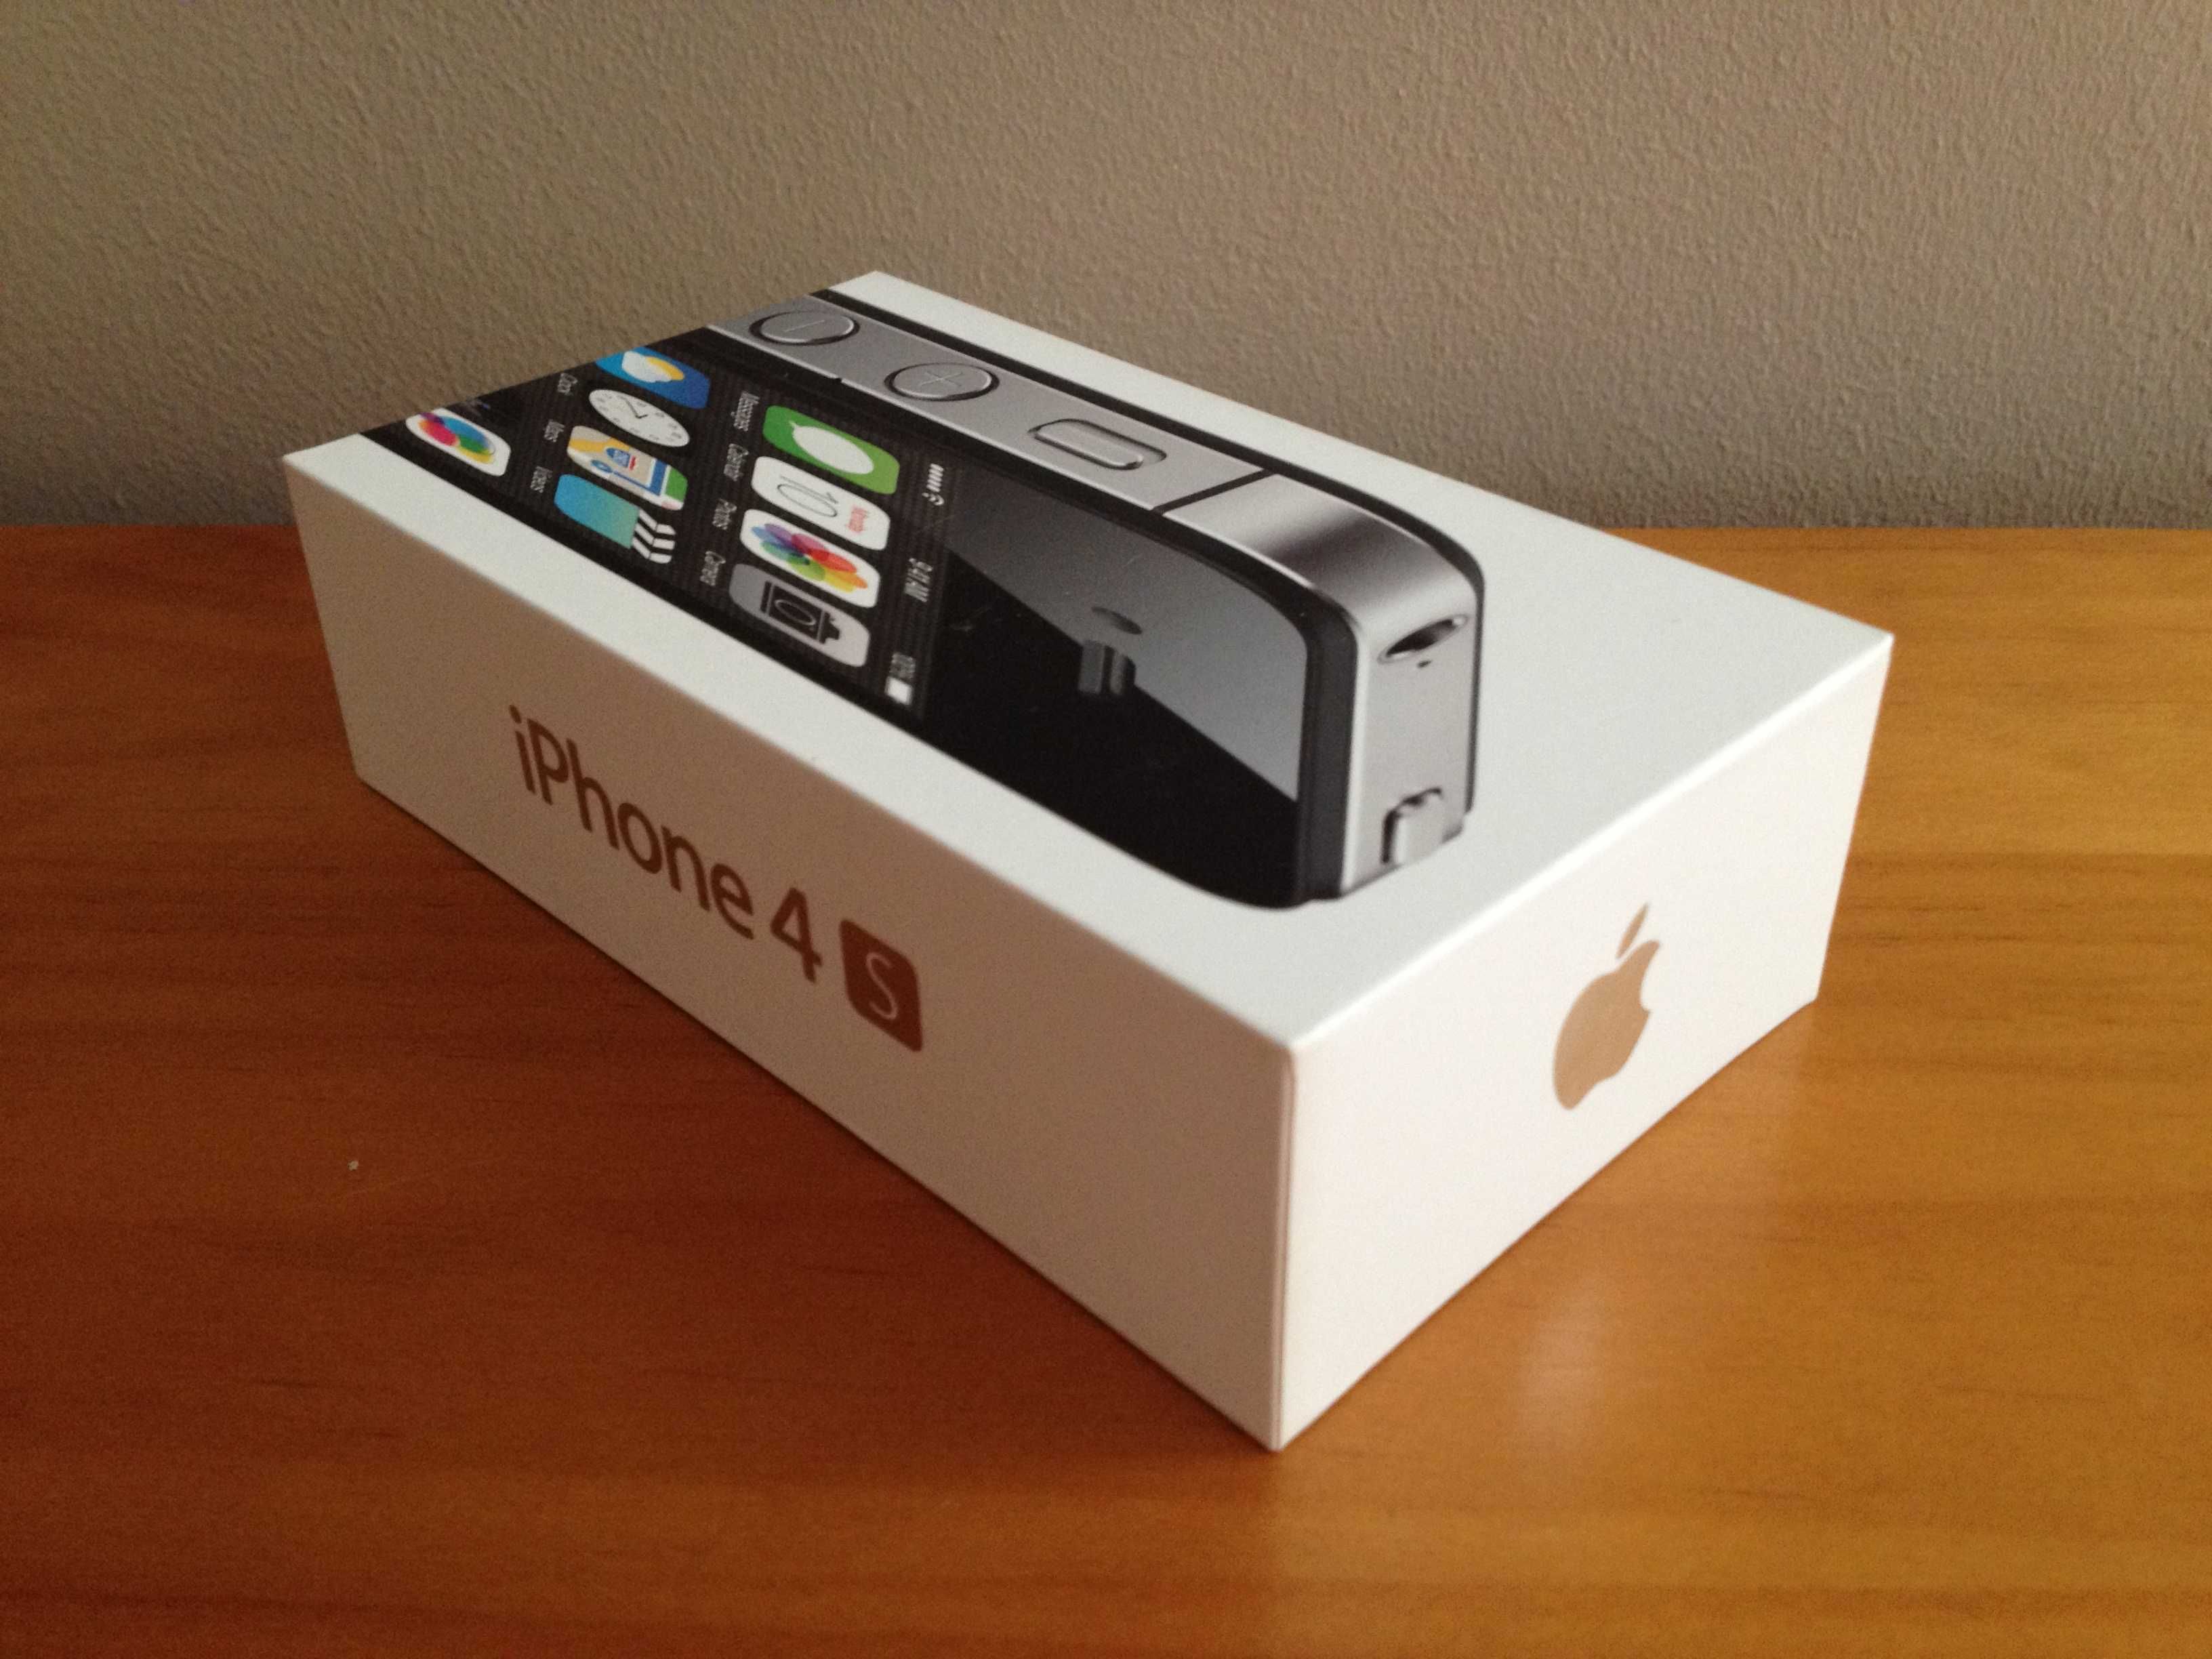 iPhone 4S 8 GB + oryginalne pudełko